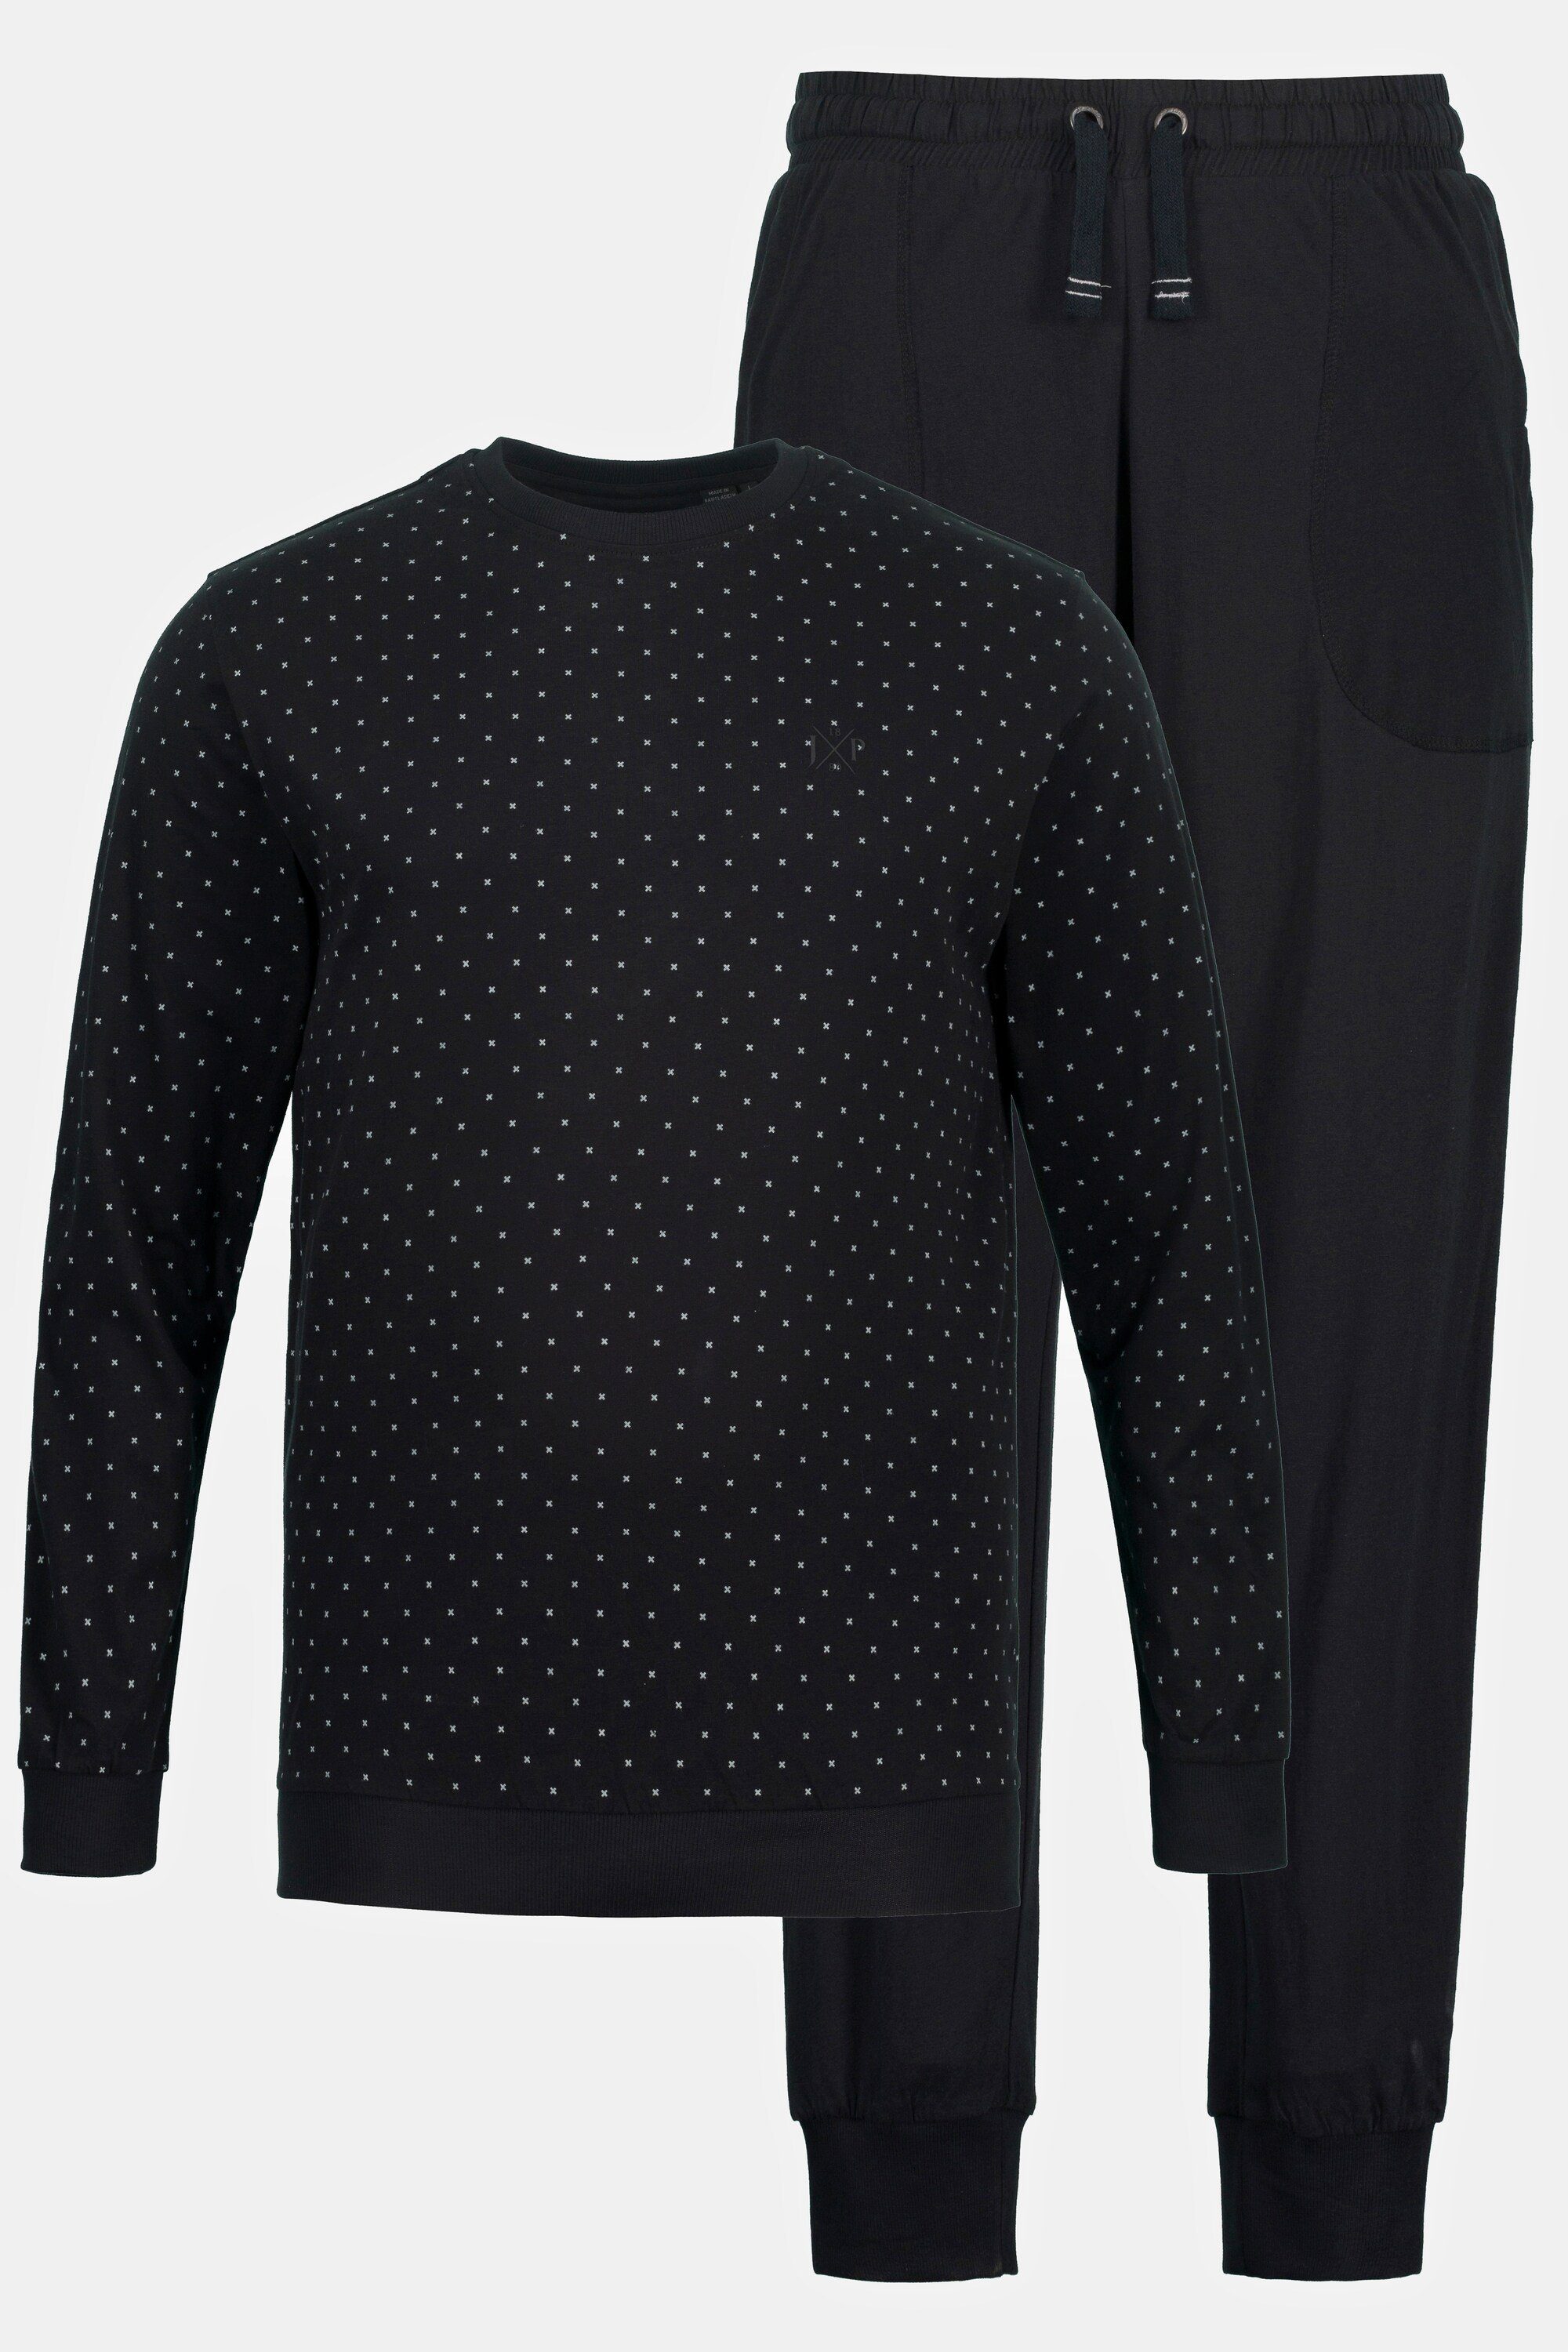 Bauchfit lange schwarz Schlafanzug JP1880 Schlafanzug Langarmshirt Hose